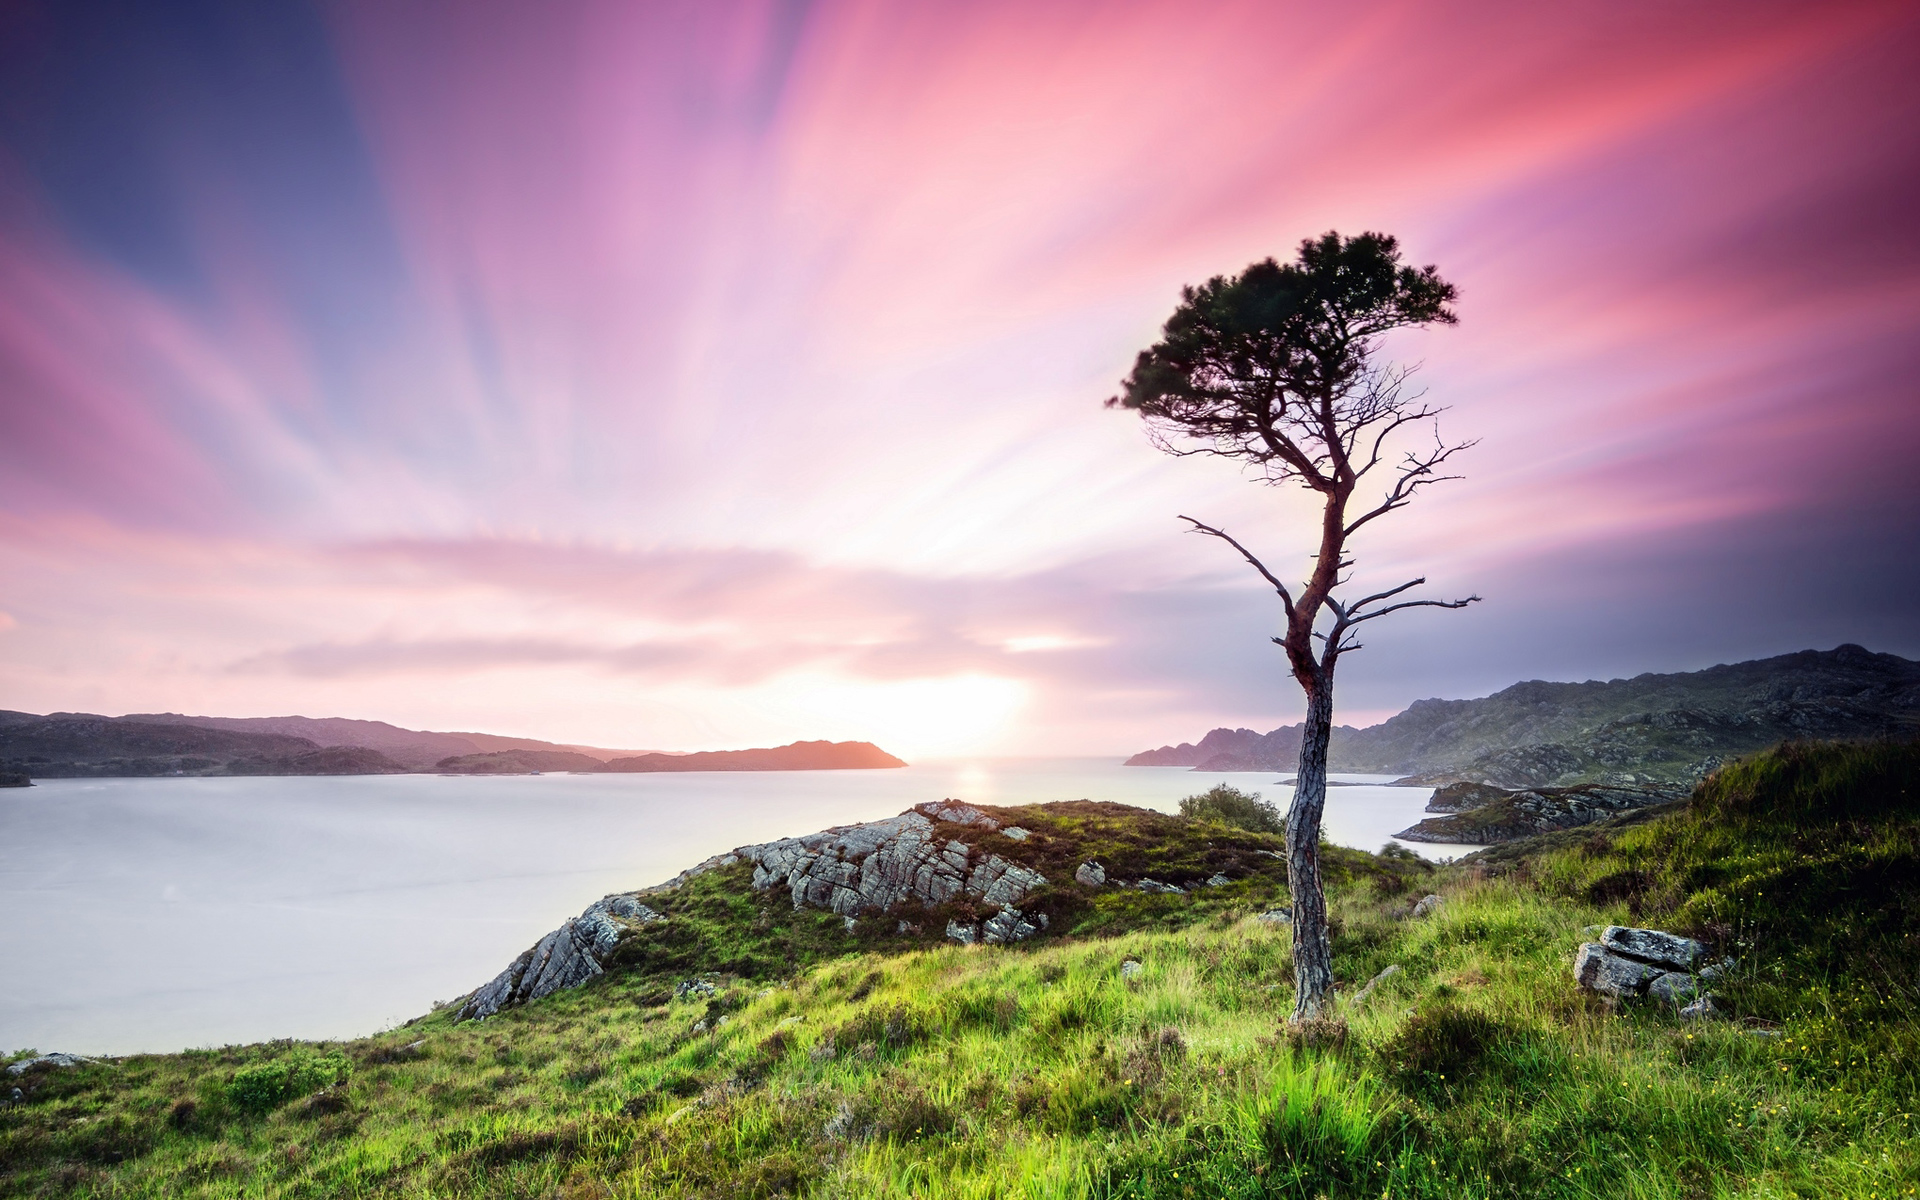 Скачать обои бесплатно Пейзаж, Природа, Закат, Море, Дерево, Шотландия, Земля/природа картинка на рабочий стол ПК